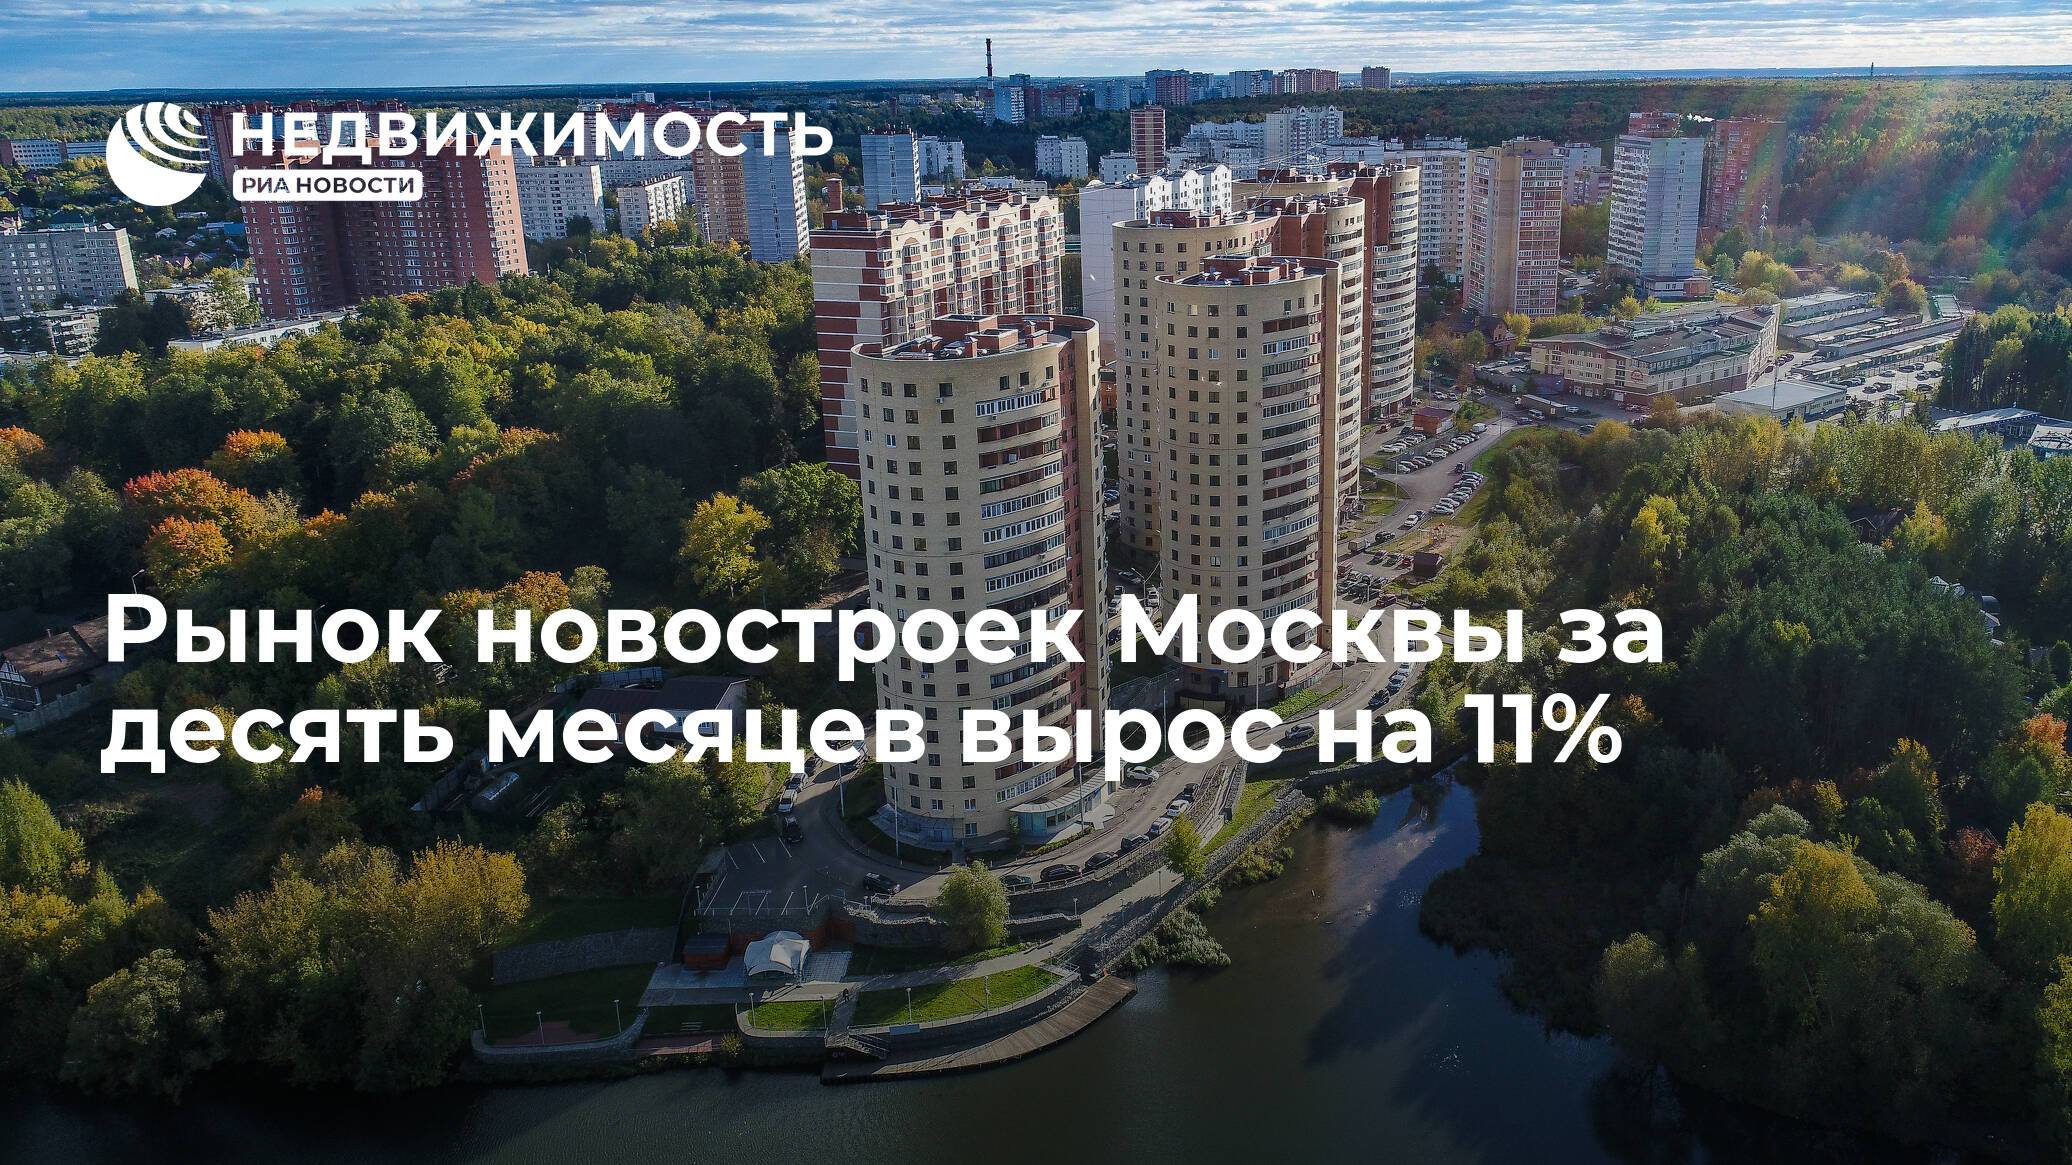 Новостройки москвы на старте продаж в апреле 2021 года: что, где, почем | allbreakingnews.ru